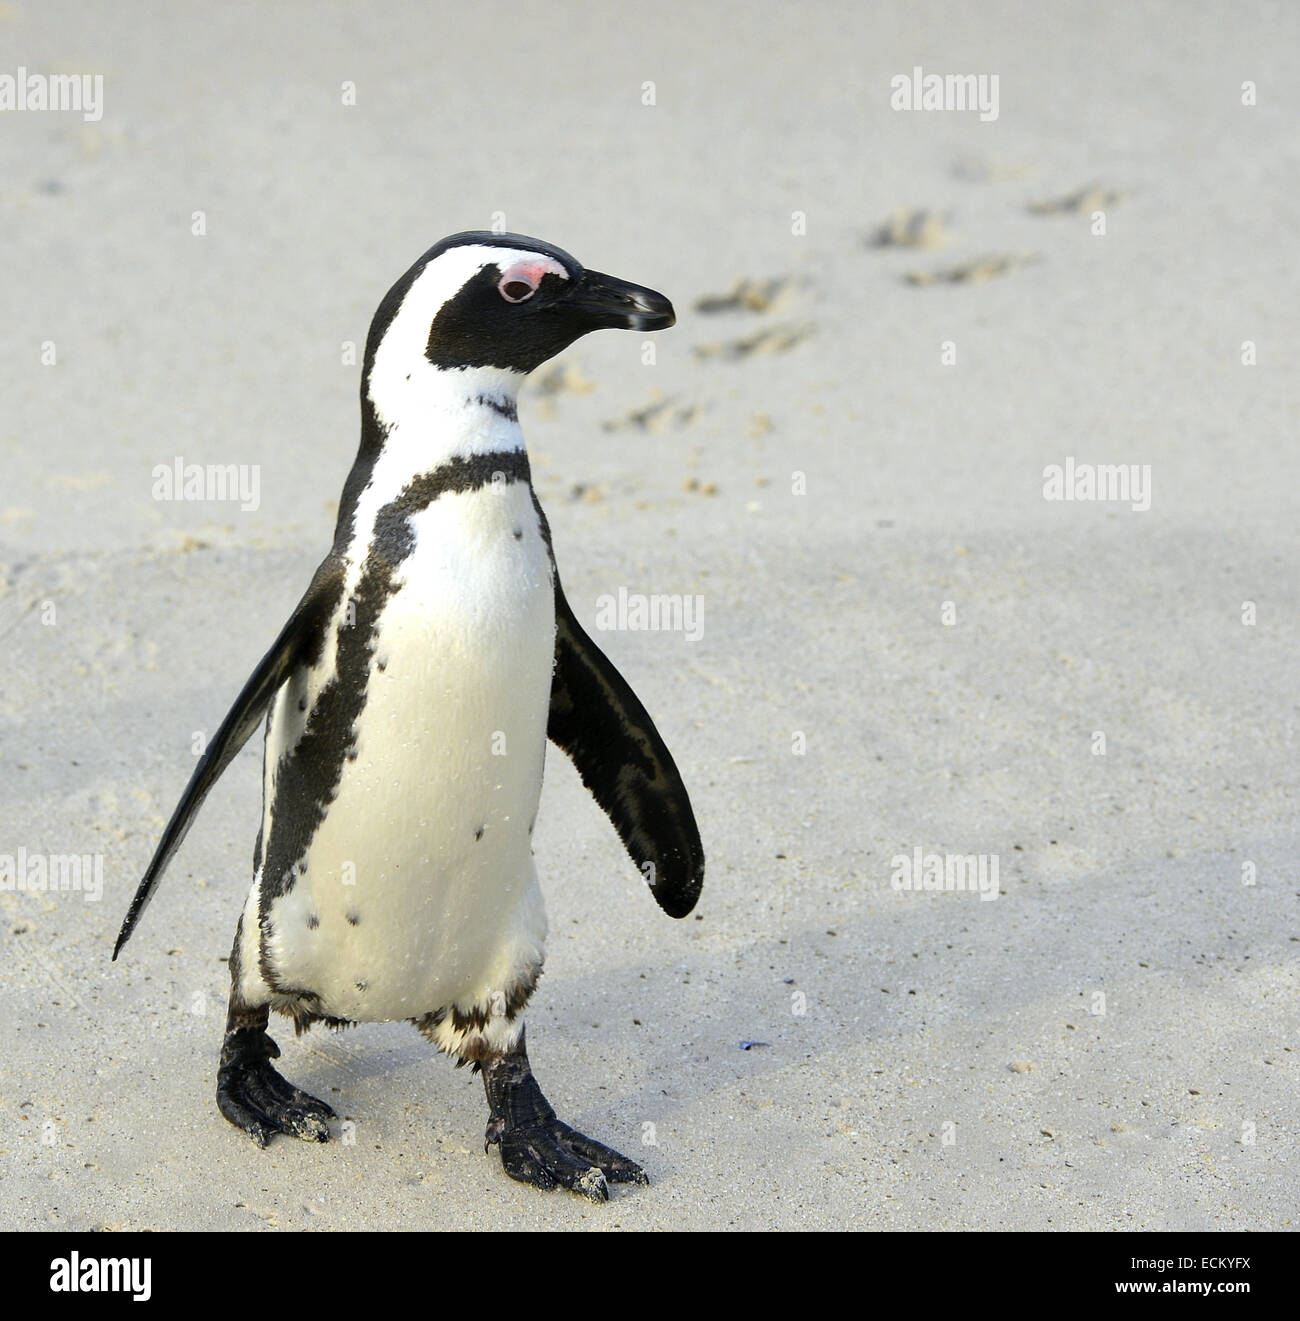 A piedi pinguino africano (Spheniscus demersus) con impronta sulla sabbia. Massi colony a Cape Town, Sud Africa. Foto Stock